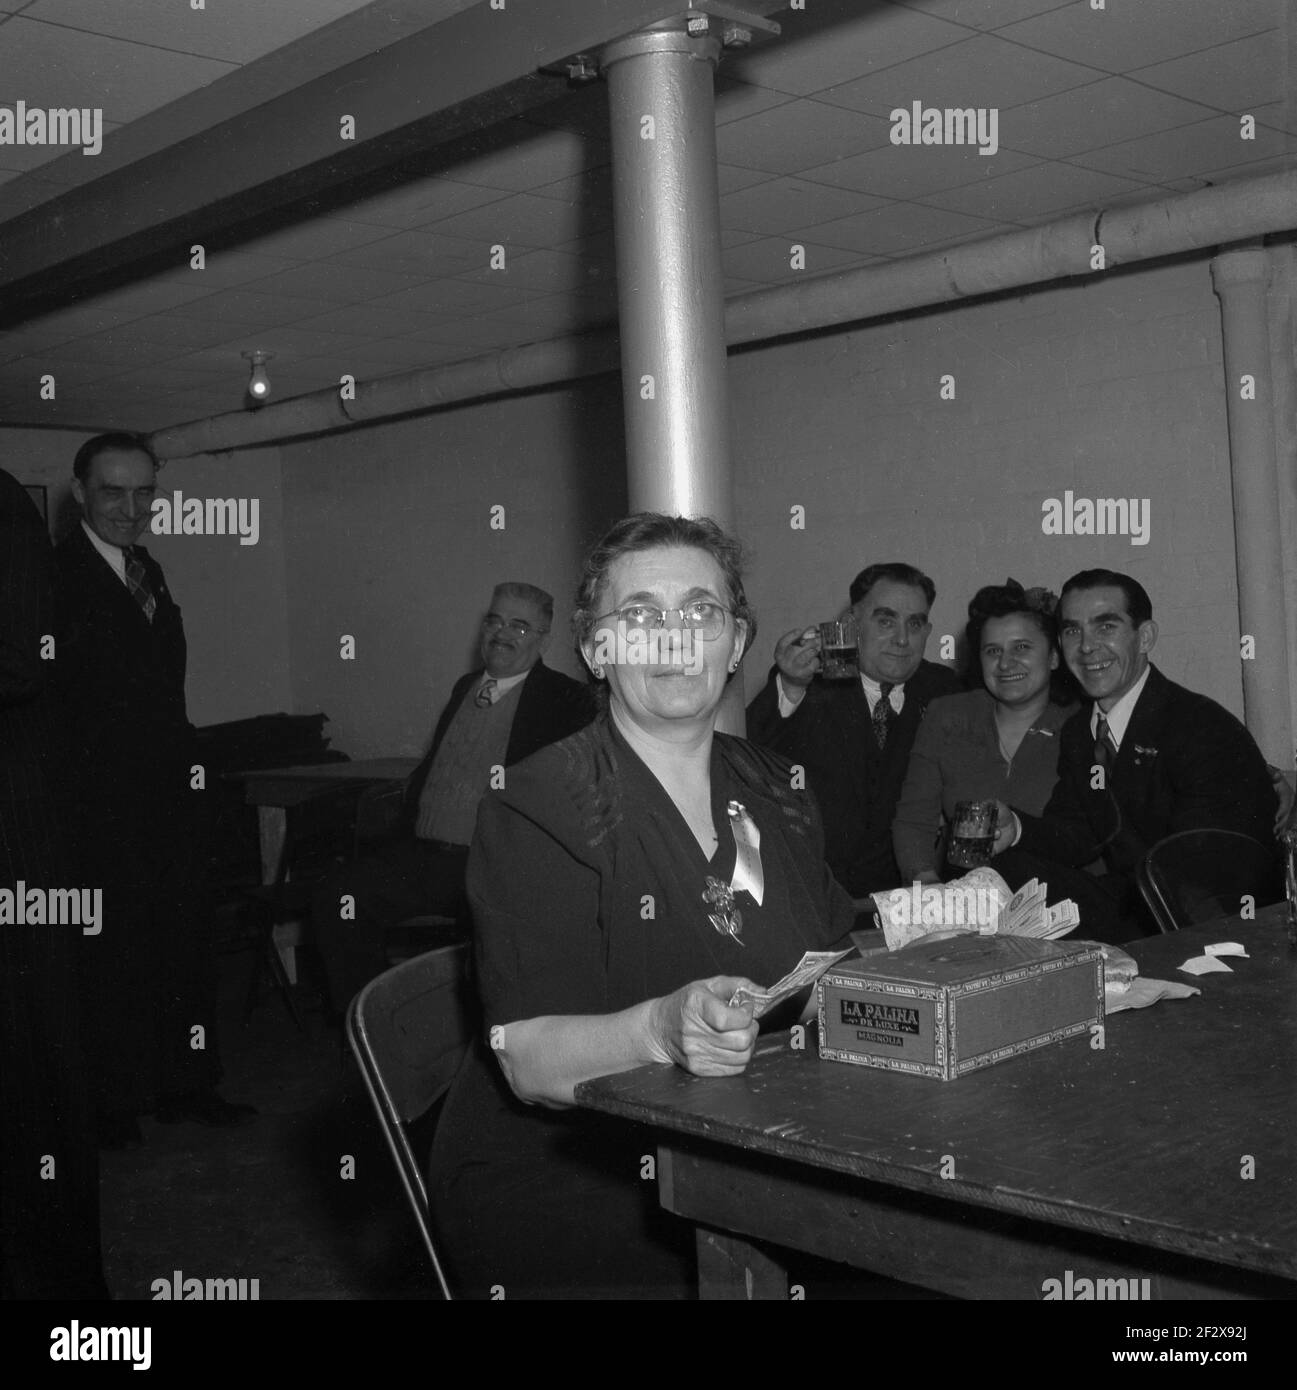 Fin des années 1940, historique, près de la salle d'horloge dans une cave ou un sous-sol clalub ou un bar, une femme mature caissière assis à une table avec une boîte à cigares « la Palina de Luxe » comptant des billets de dollars, comme les clients derrière elle aiment un verre et un rire. Une marque célèbre de cigares américains fabriqués par la Congress Cigar Company et dirigée par Sam Paley, père du fondateur de CBS, William S. Paley, la marque a été créée à Chicago au milieu des années 1800. La Palina est un dérivé de 'la femelle Paley et l'épouse de Sam Paley, Goldie Drell Paley est apparu dans le costume espagnol sur la boîte. Banque D'Images